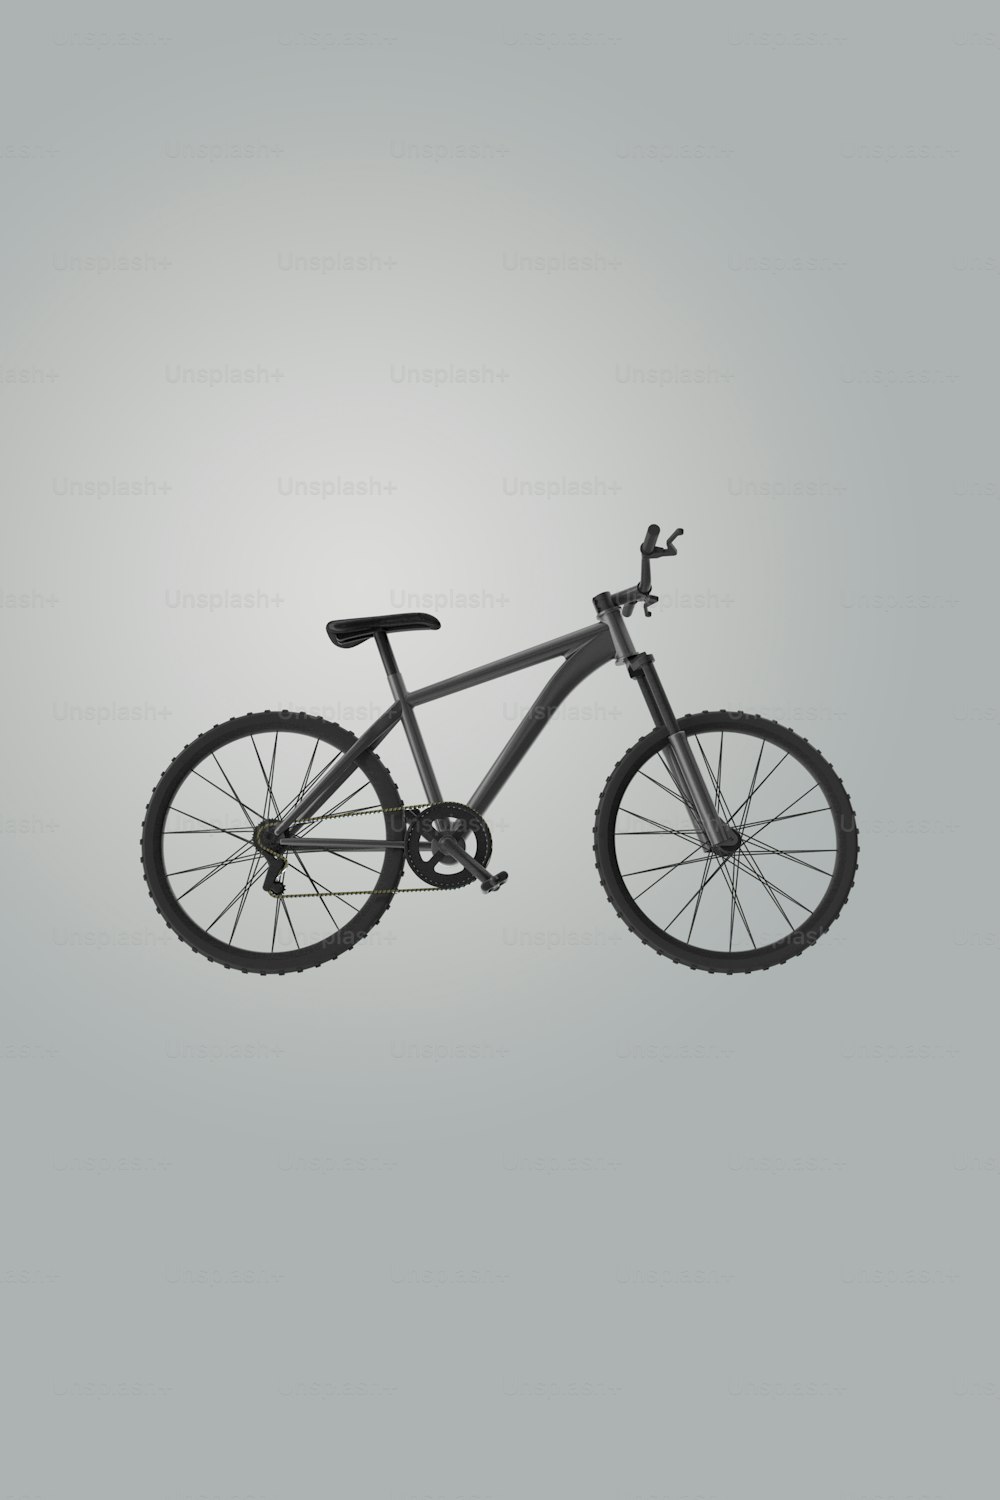 uma foto em preto e branco de uma bicicleta